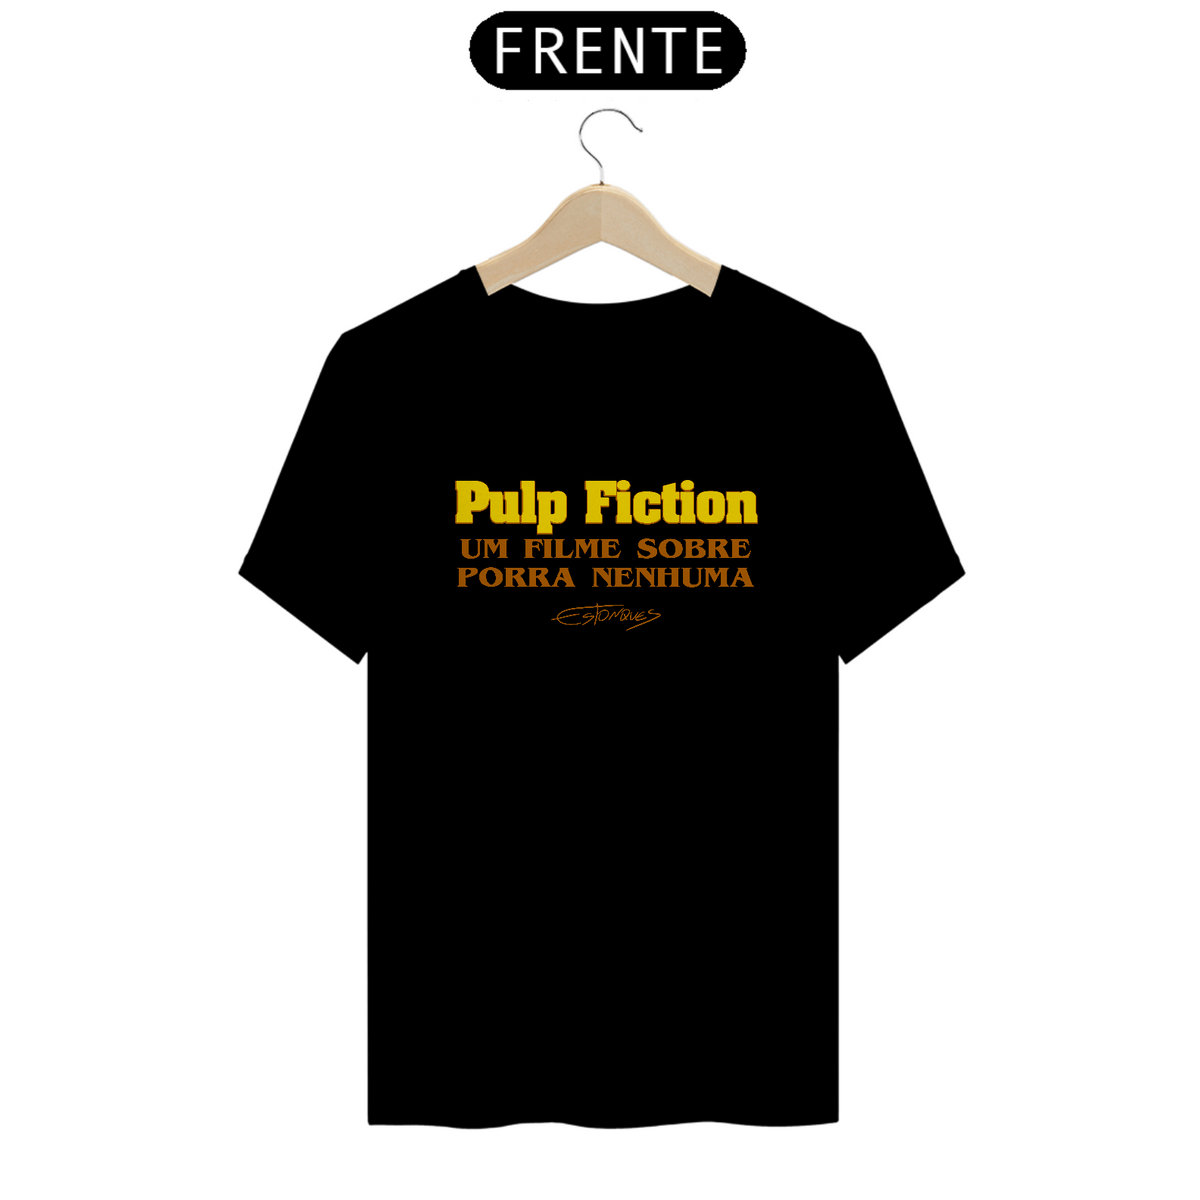 Nome do produto: Camiseta Pulp Fiction (Um Filme Sobre Porra Nenhuma)